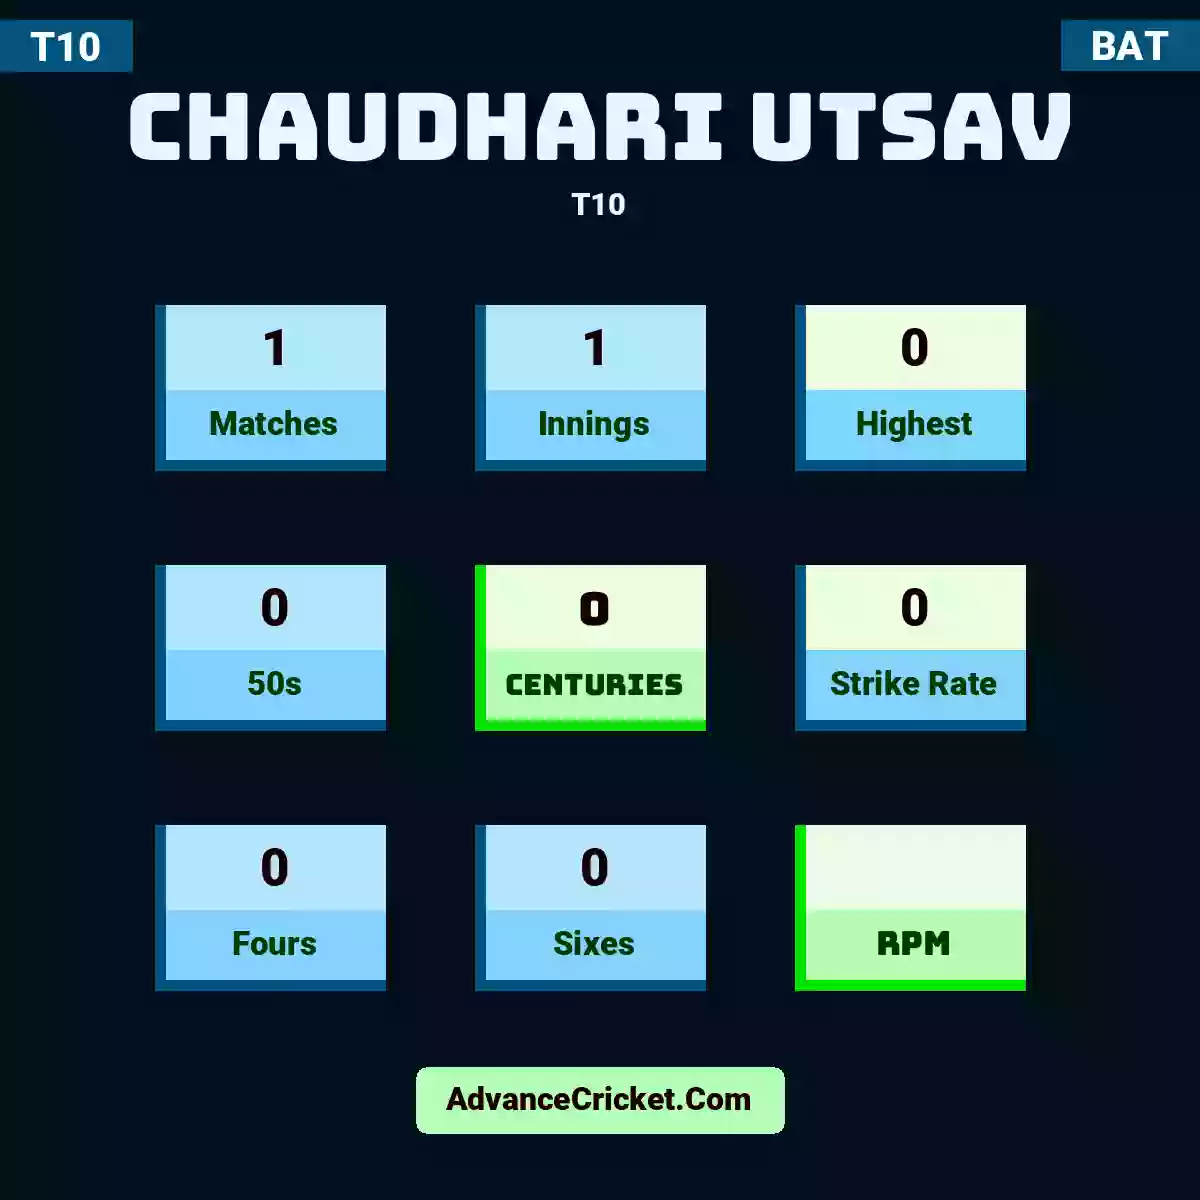 Chaudhari Utsav T10 , Chaudhari Utsav played 1 matches, scored 0 runs as highest, 0 half-centuries, and 0 centuries, with a strike rate of 0. C.Utsav hit 0 fours and 0 sixes.